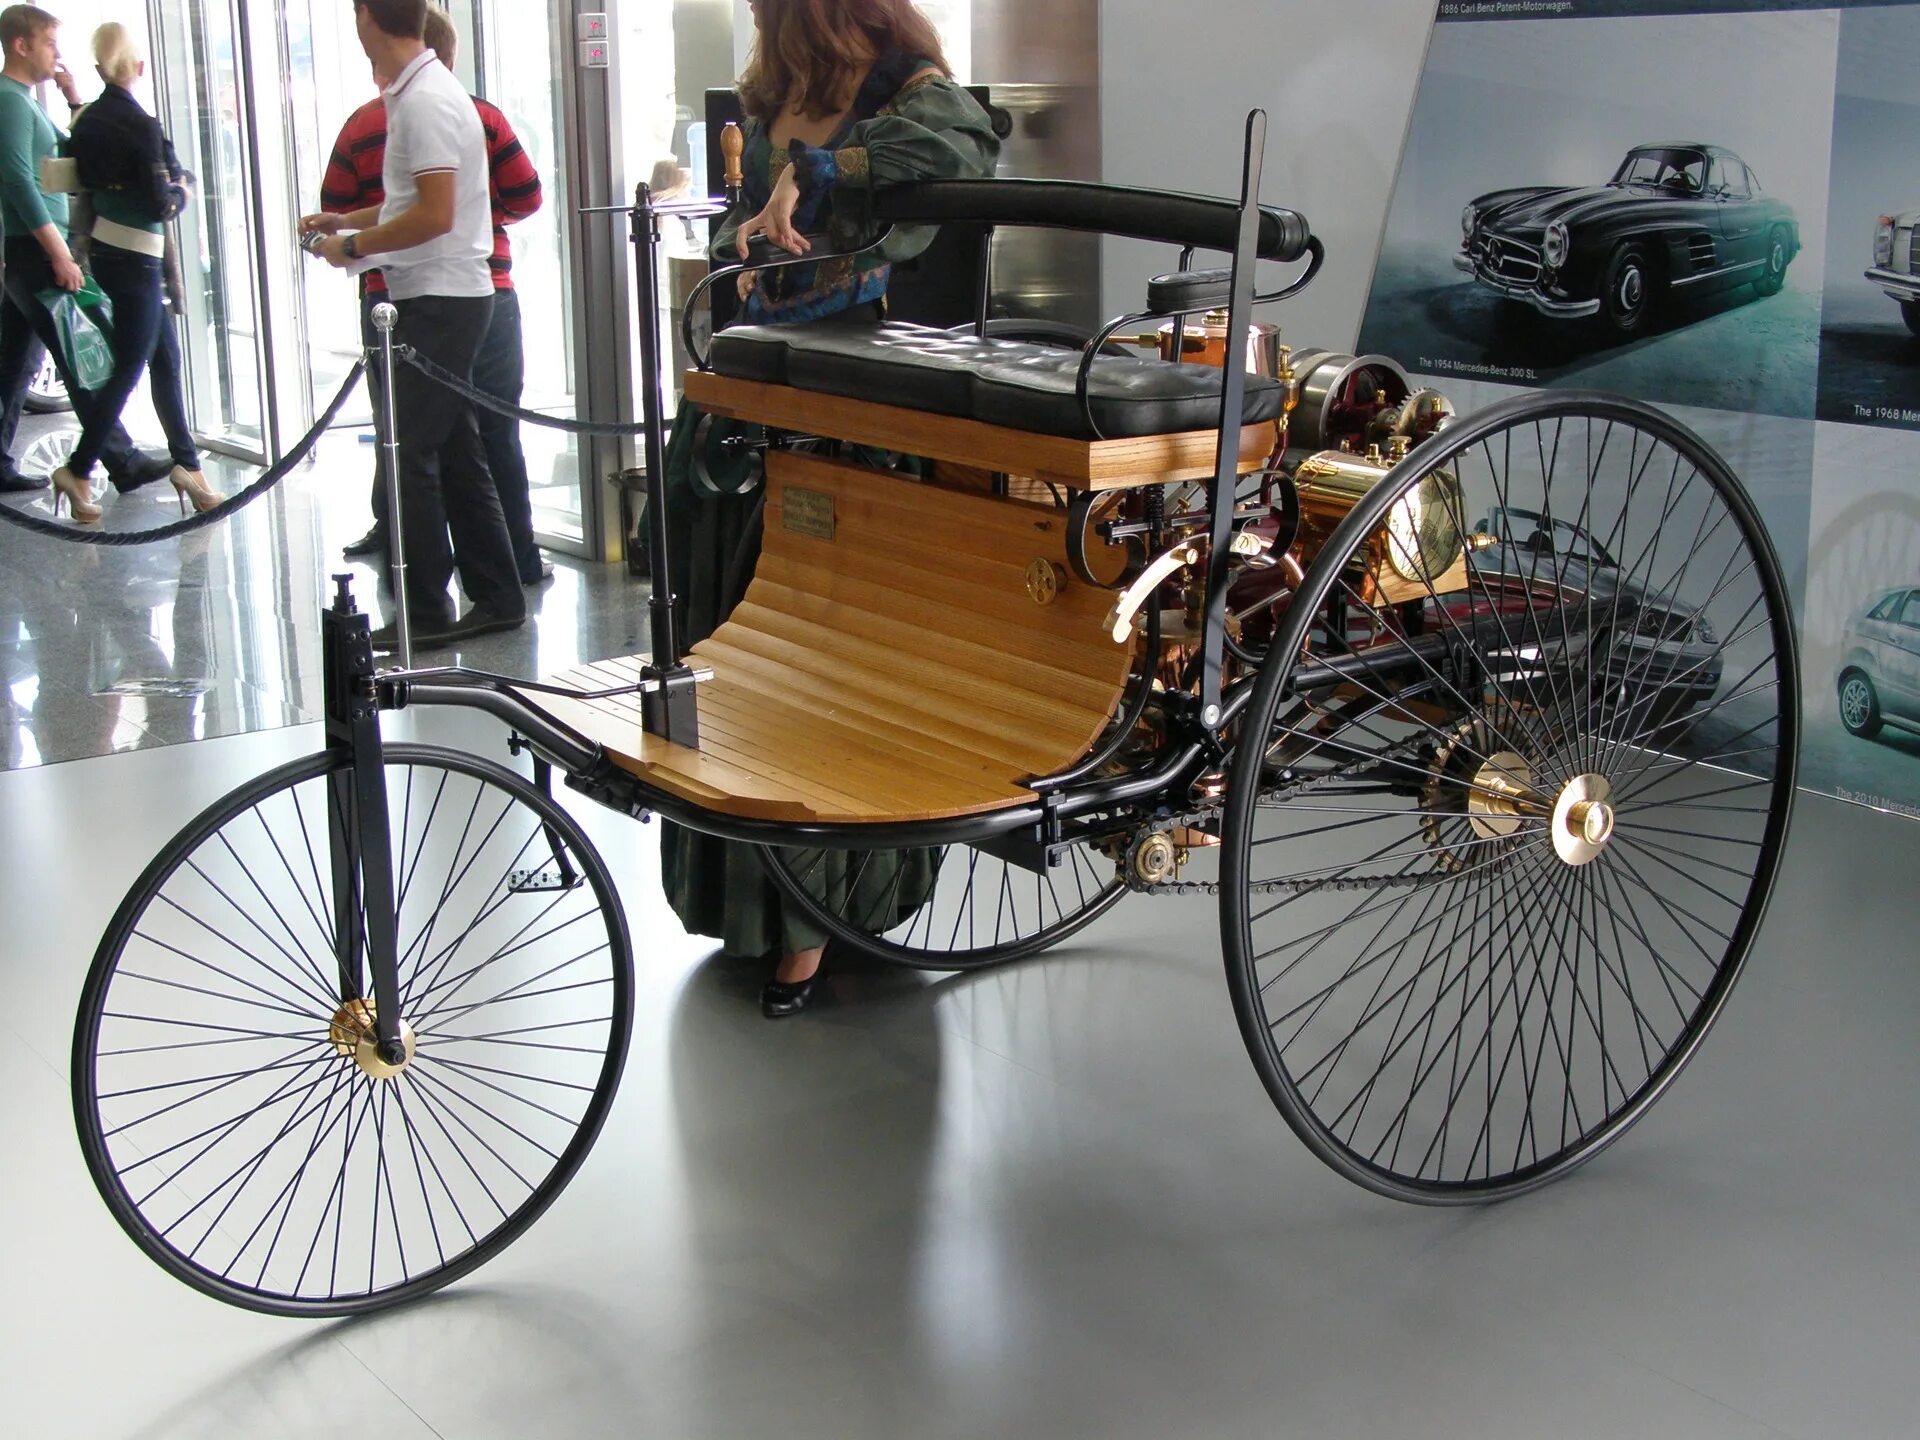 Какие 1 машины появились. Первый Мерседес Бенц 1886. Benz Patent-Motorwagen 1886 двигатель. Benz Patent-Motorwagen 1886 года.